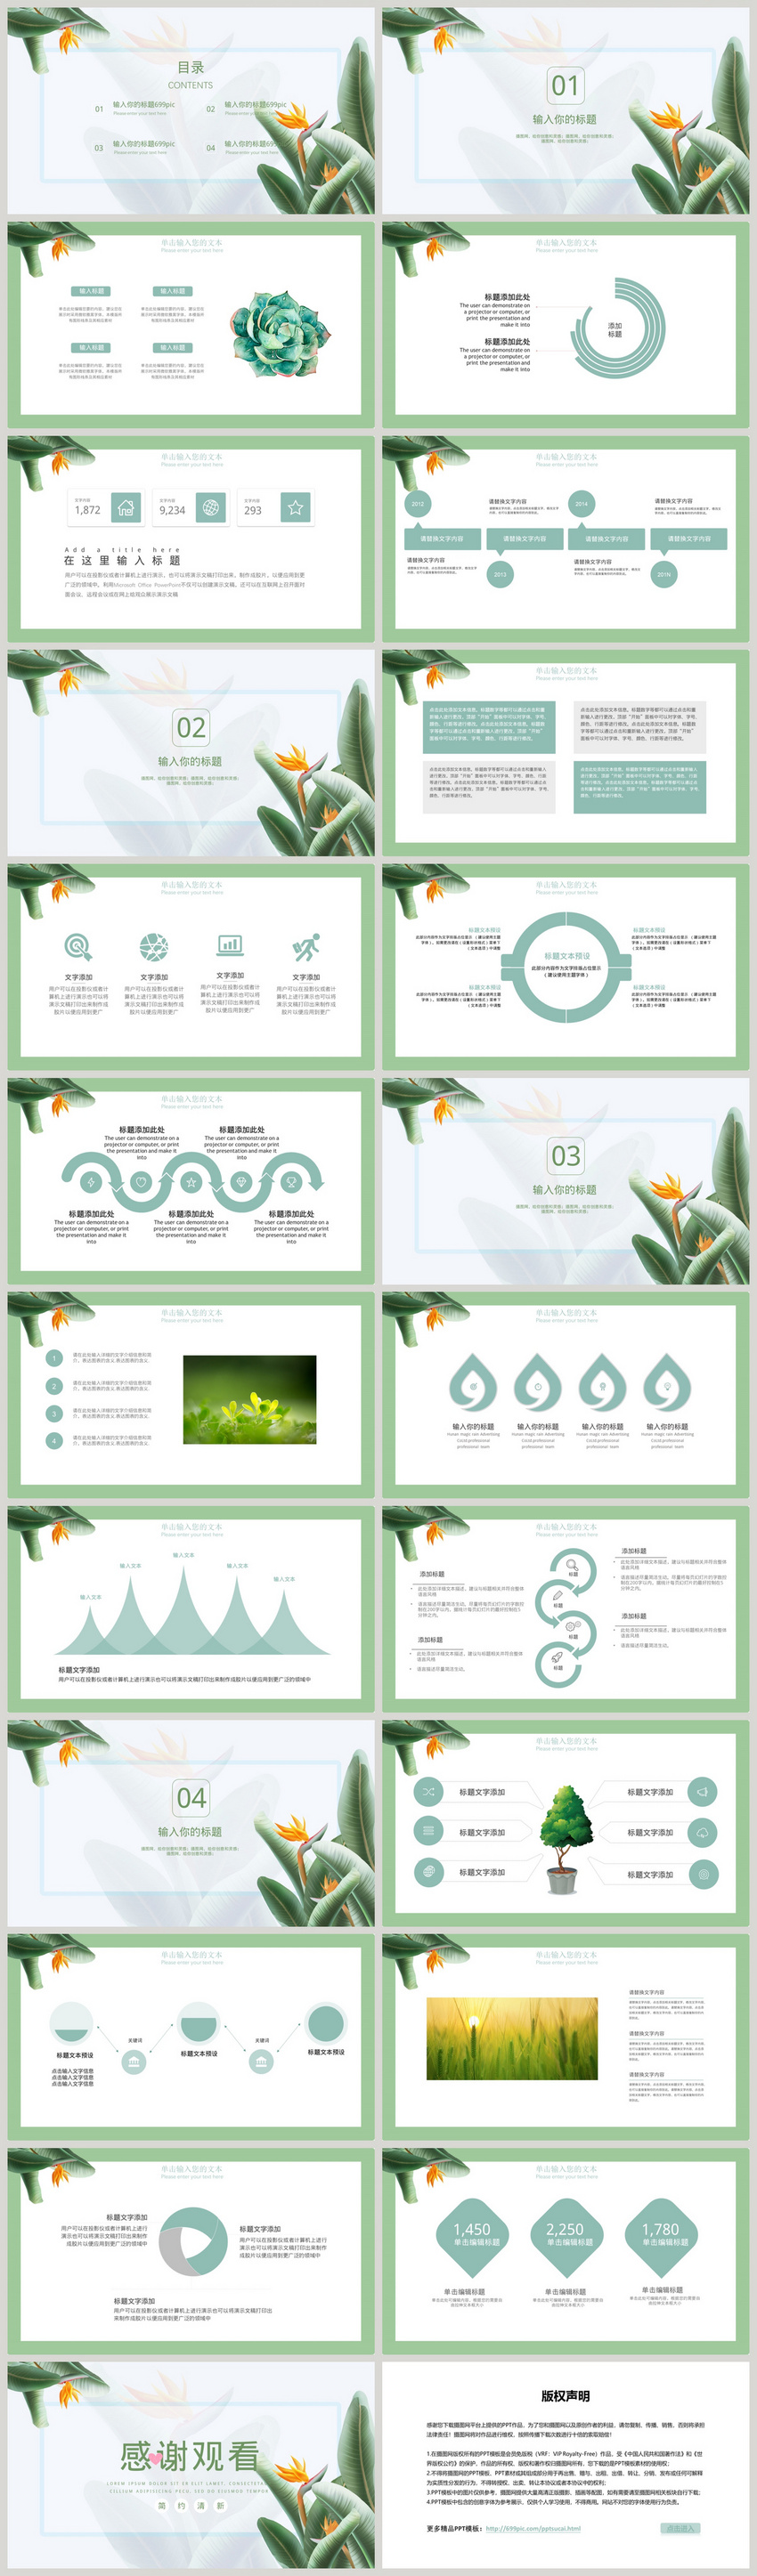 Thông tin mẫu powerpoint màu xanh lá cây hữu ích nhất